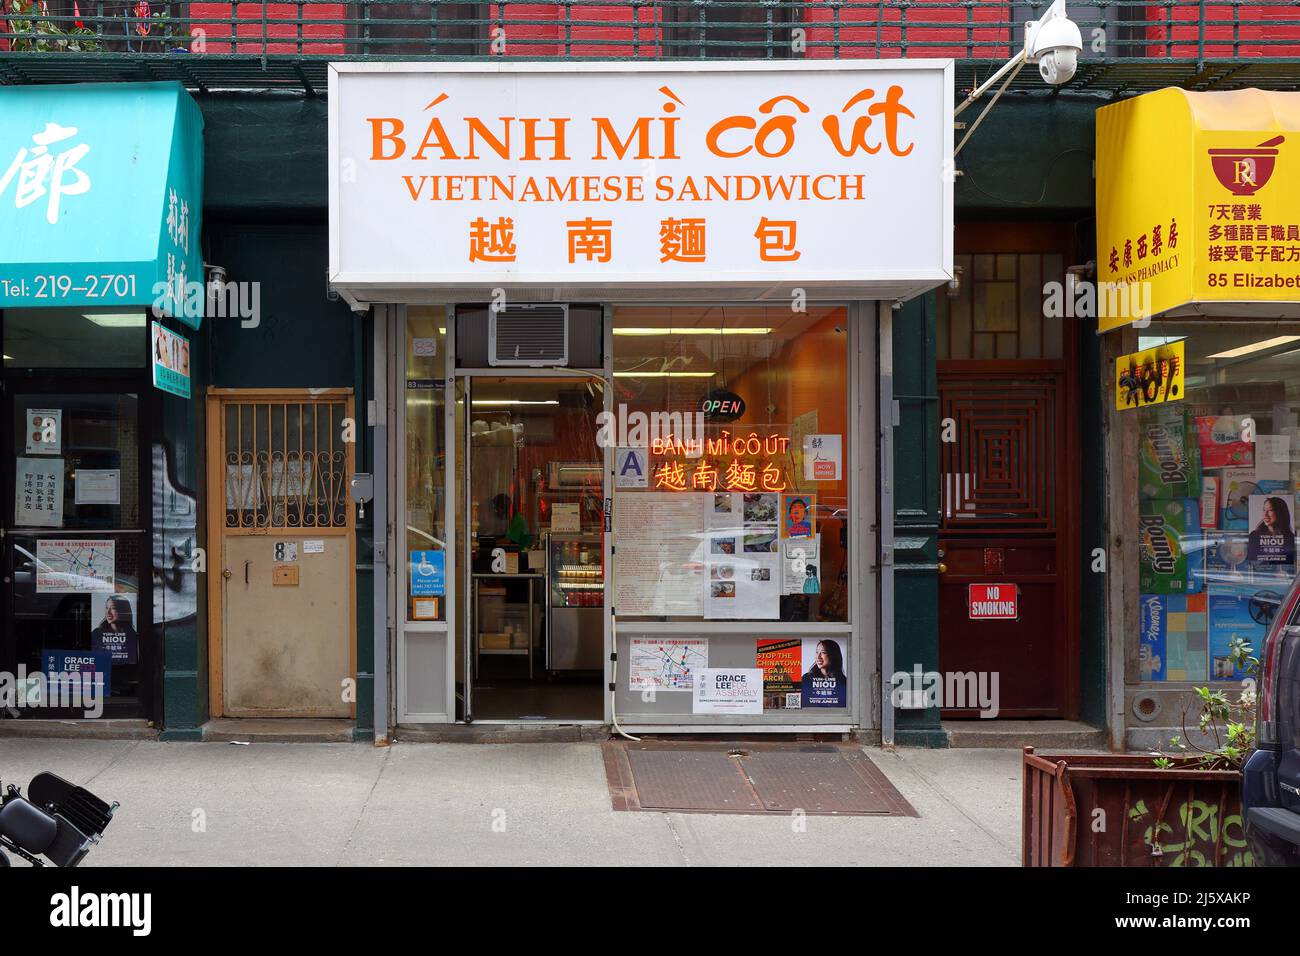 Banh Mi Co Ut, 83 Elizabeth St, New York, NYC Schaufensterfoto eines vietnamesischen Sandwich-Shops in Manhattan, Chinatown. Bánh Mì Cô Út Stockfoto